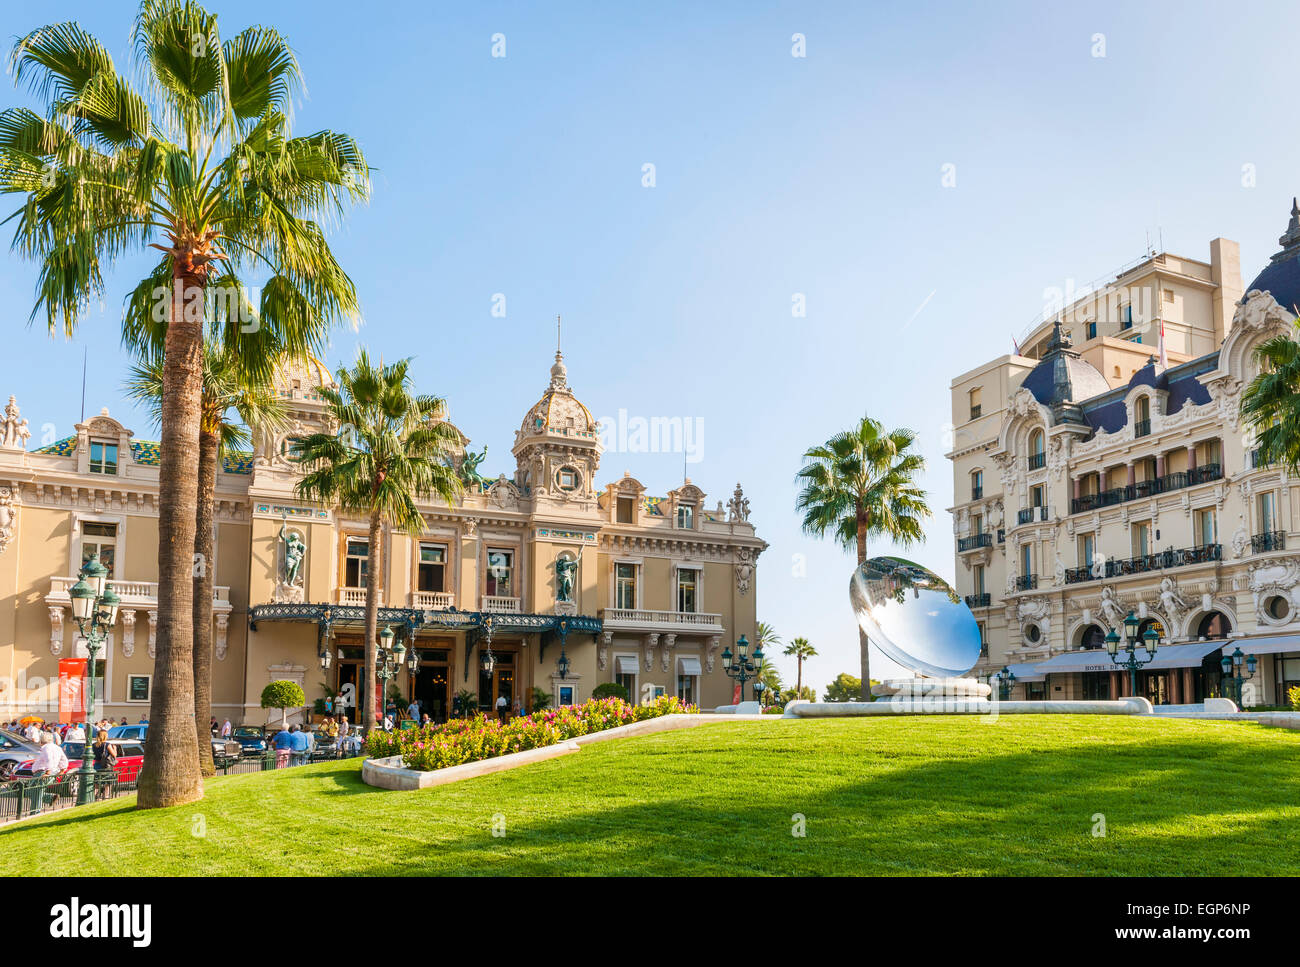 MONTE CARLO, MONACO - OCTOBER 3, 2014: Monte Carlo Casino and Hotel de Paris in Monaco with Sky Mirror sculpture by Anish Kapoor Stock Photo